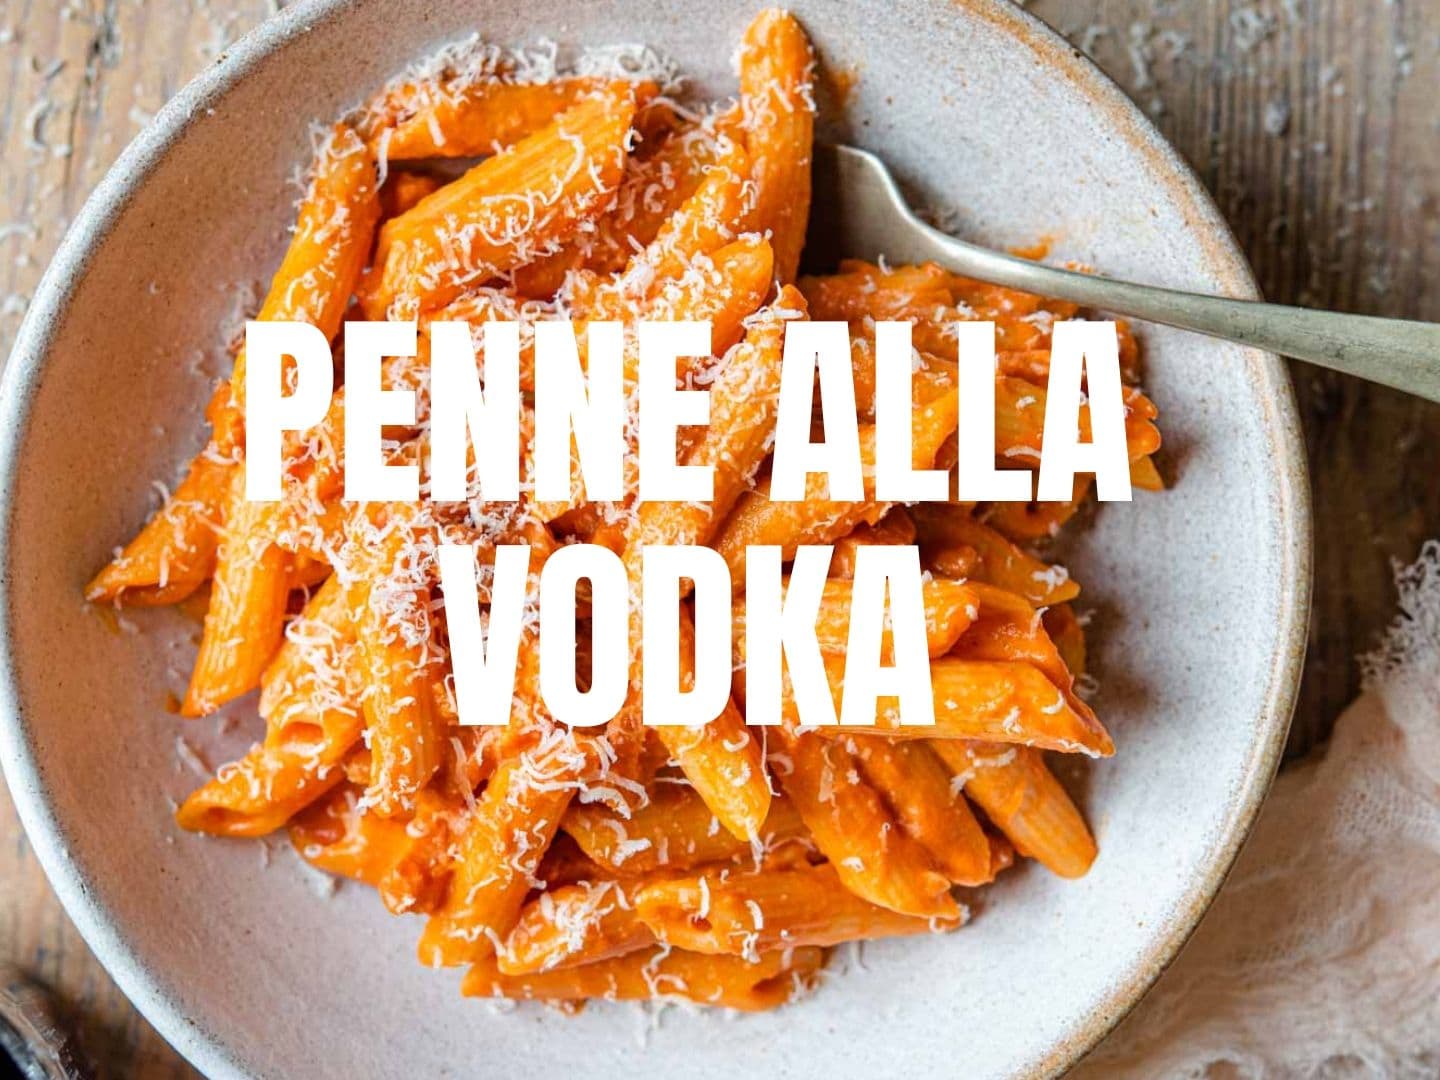 Penne alla Vodka - Pasta with Tomato Vodka Sauce - Inside The Rustic Kitchen